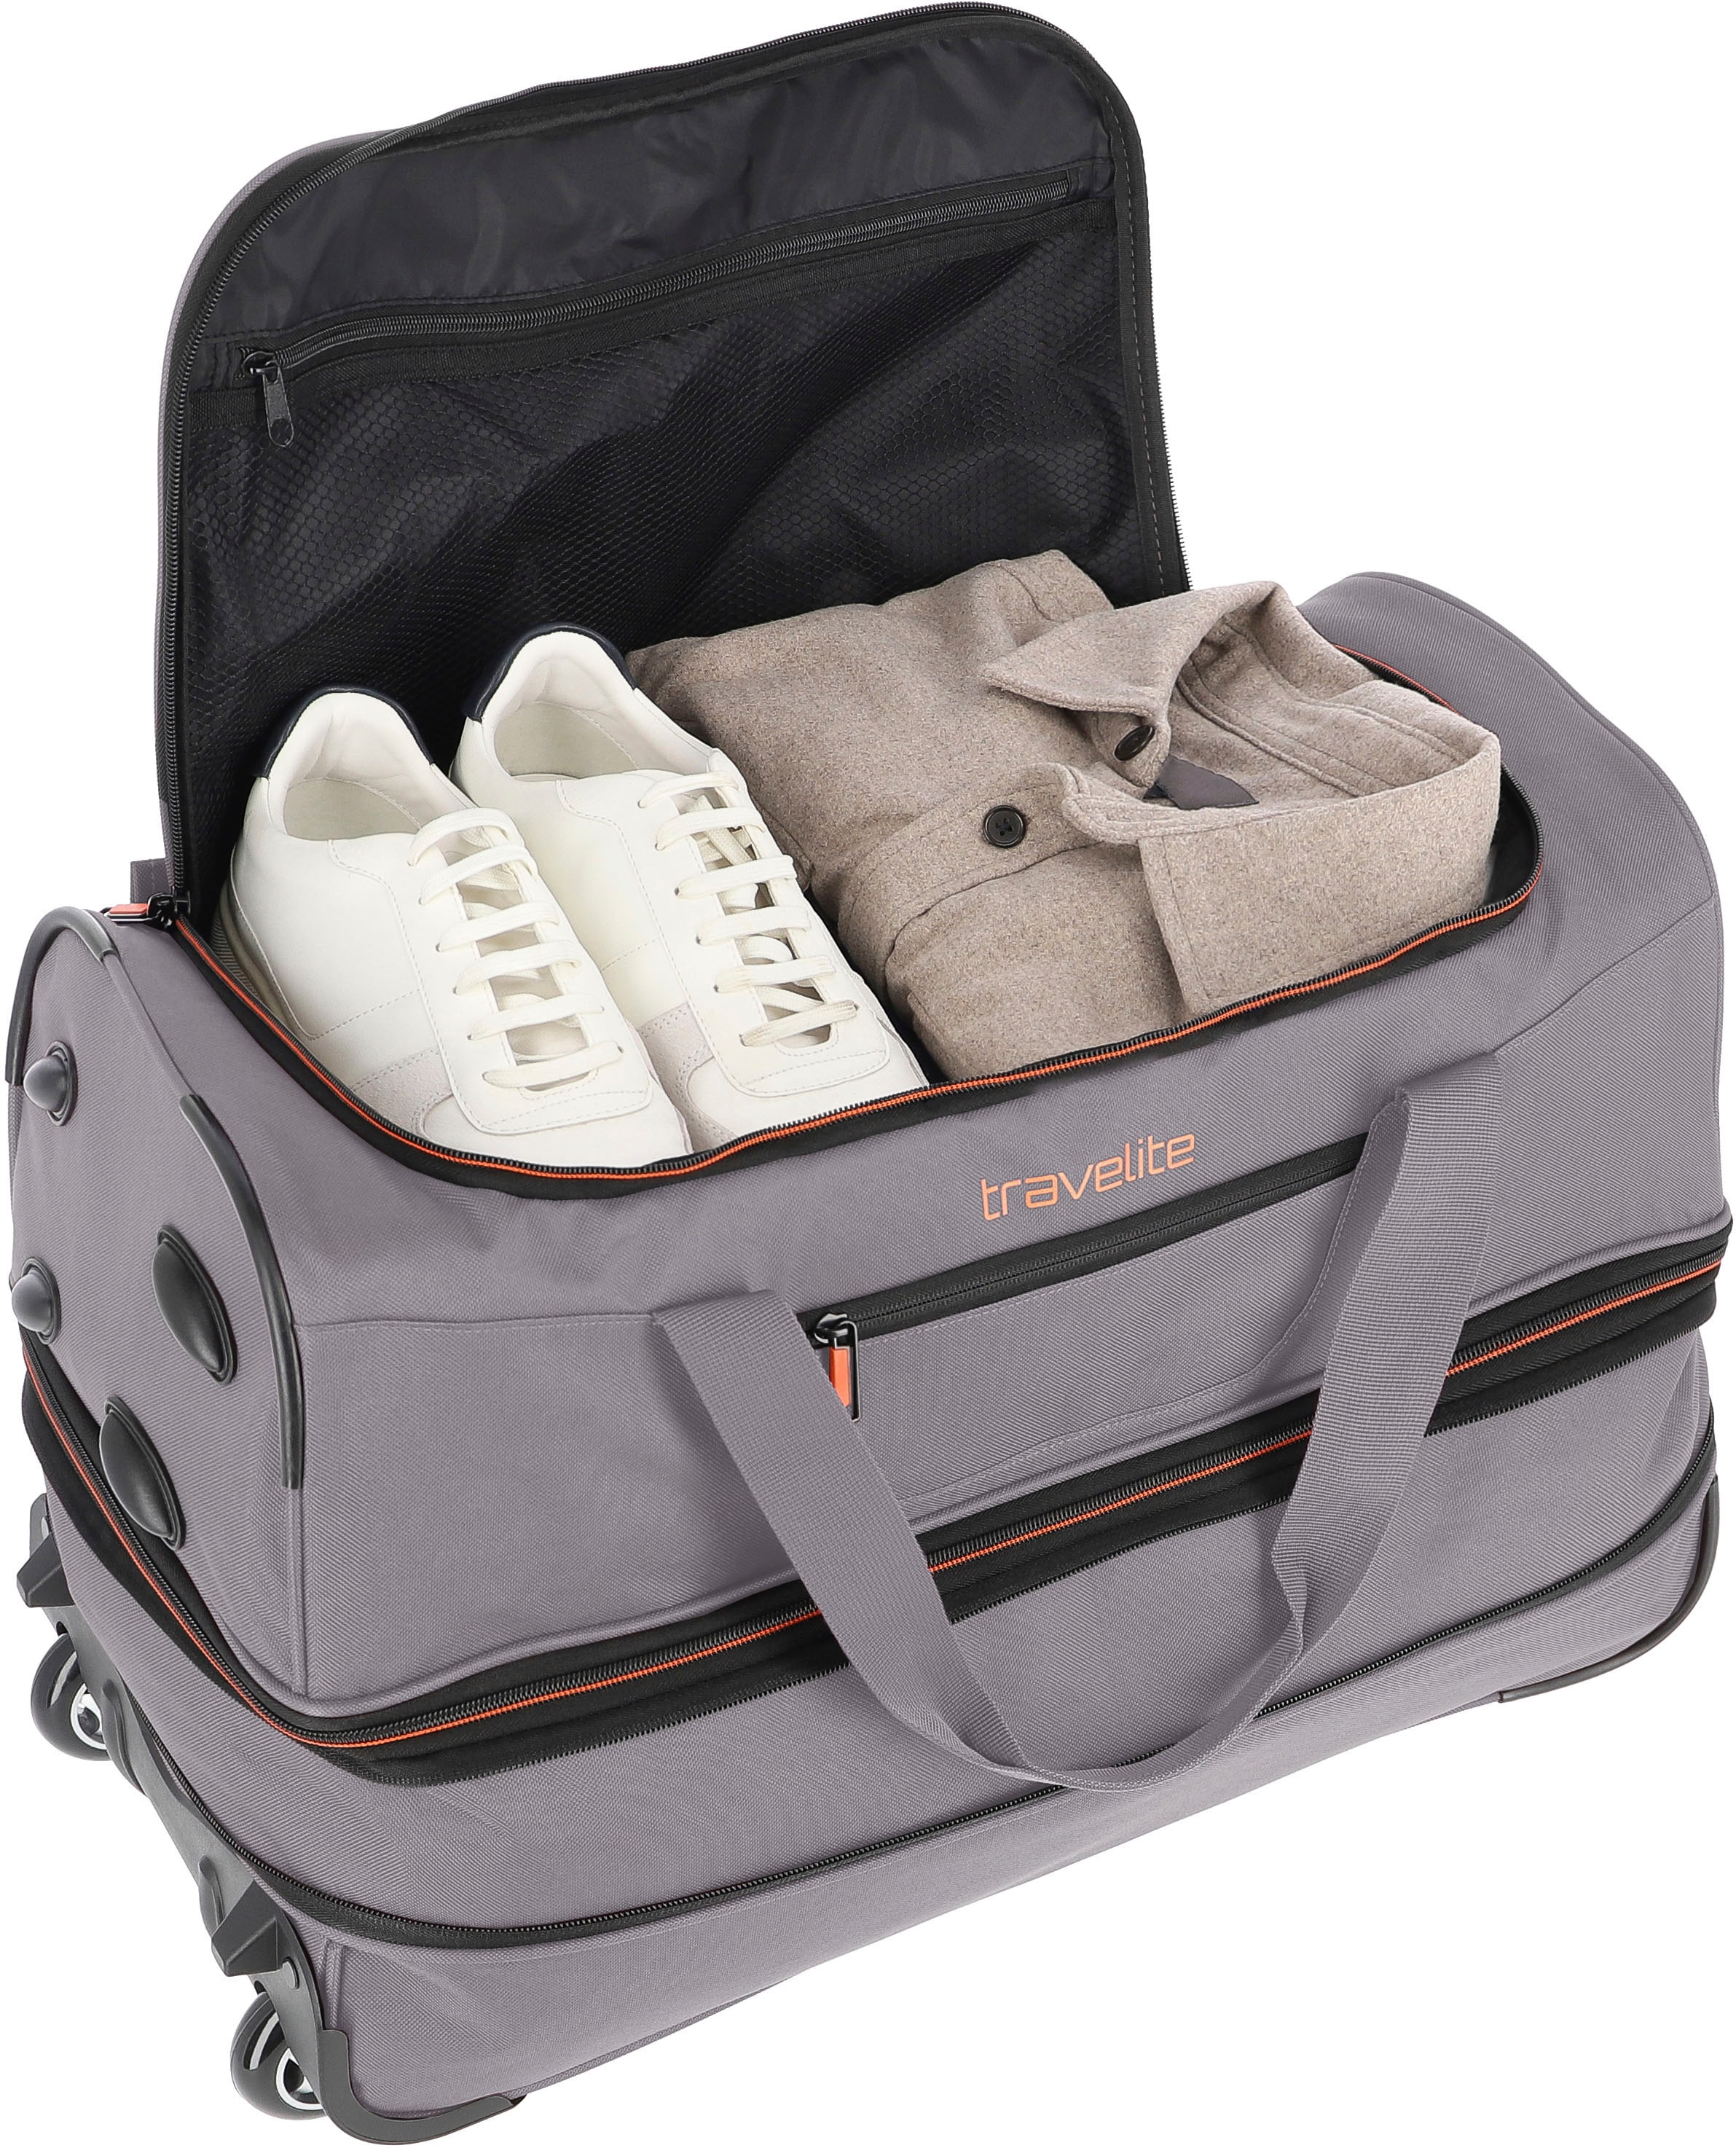 travelite Reisetasche »Basics, 55 cm, grau/orange«, Duffle Bag Sporttasche mit Trolleyfunktion und Volumenerweiterung